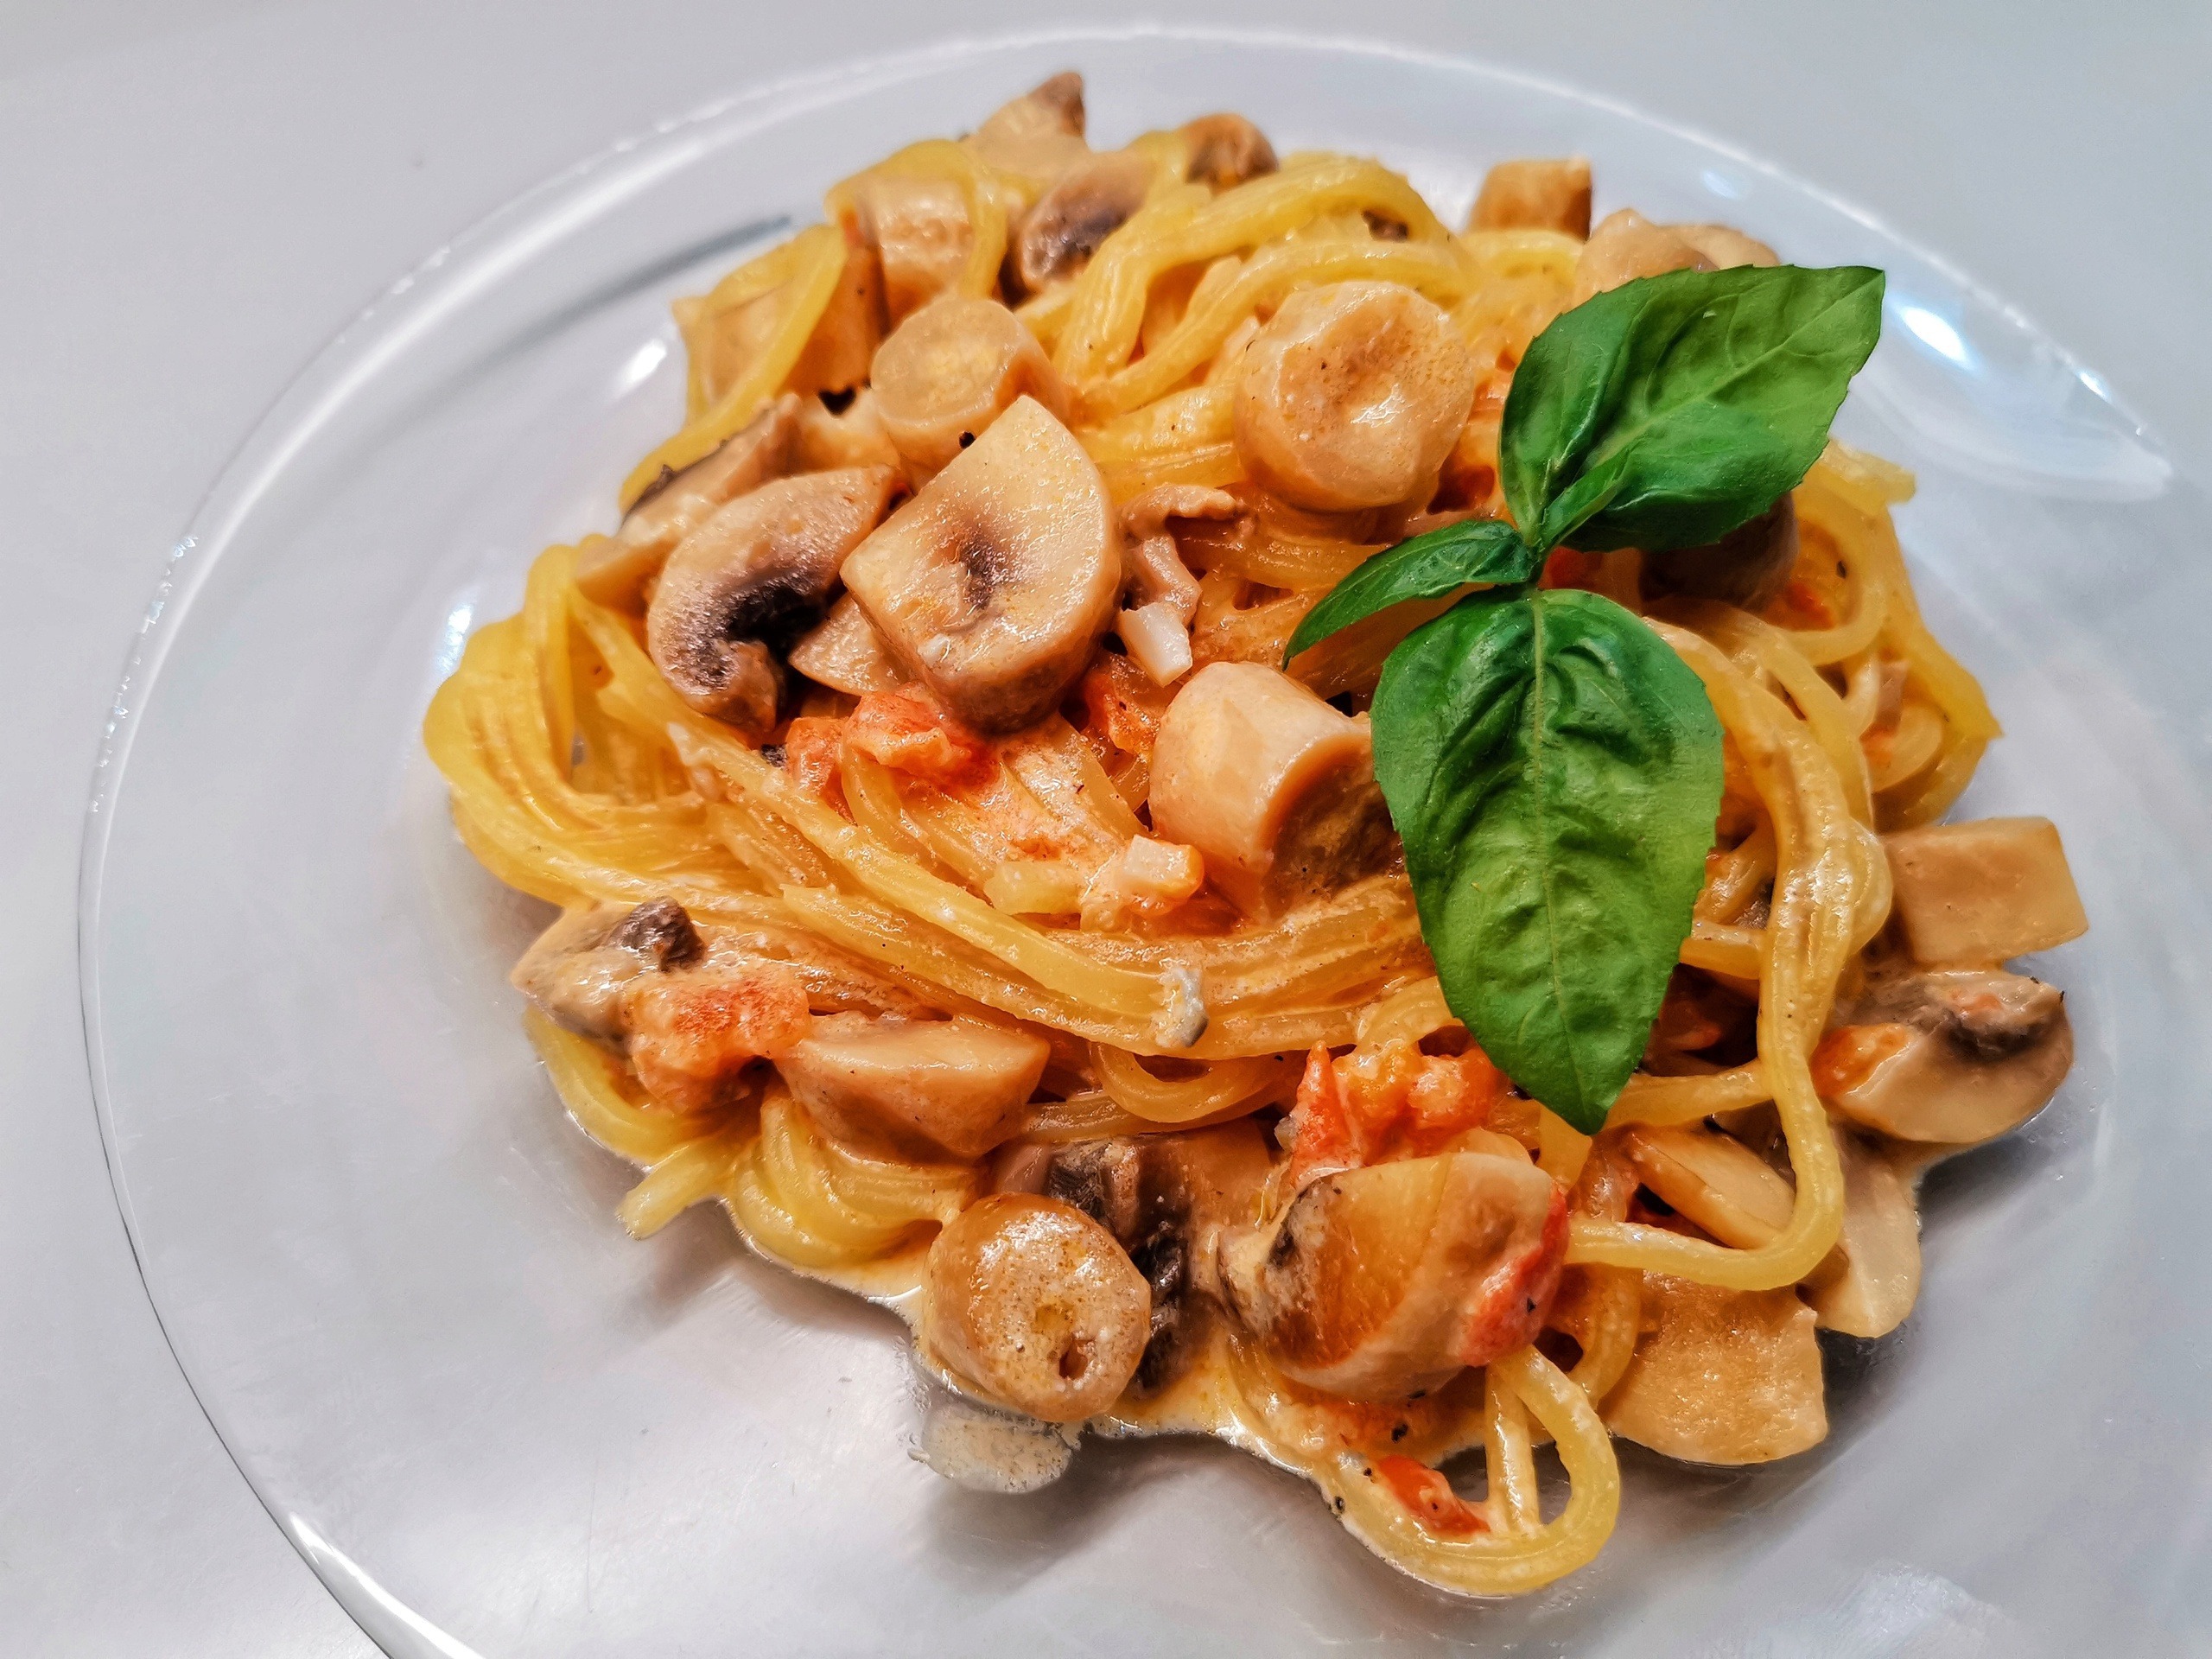 Рецепты пасты, макарон, спагетти в домашних условиях с фото, более 60 рецептов | Меню недели